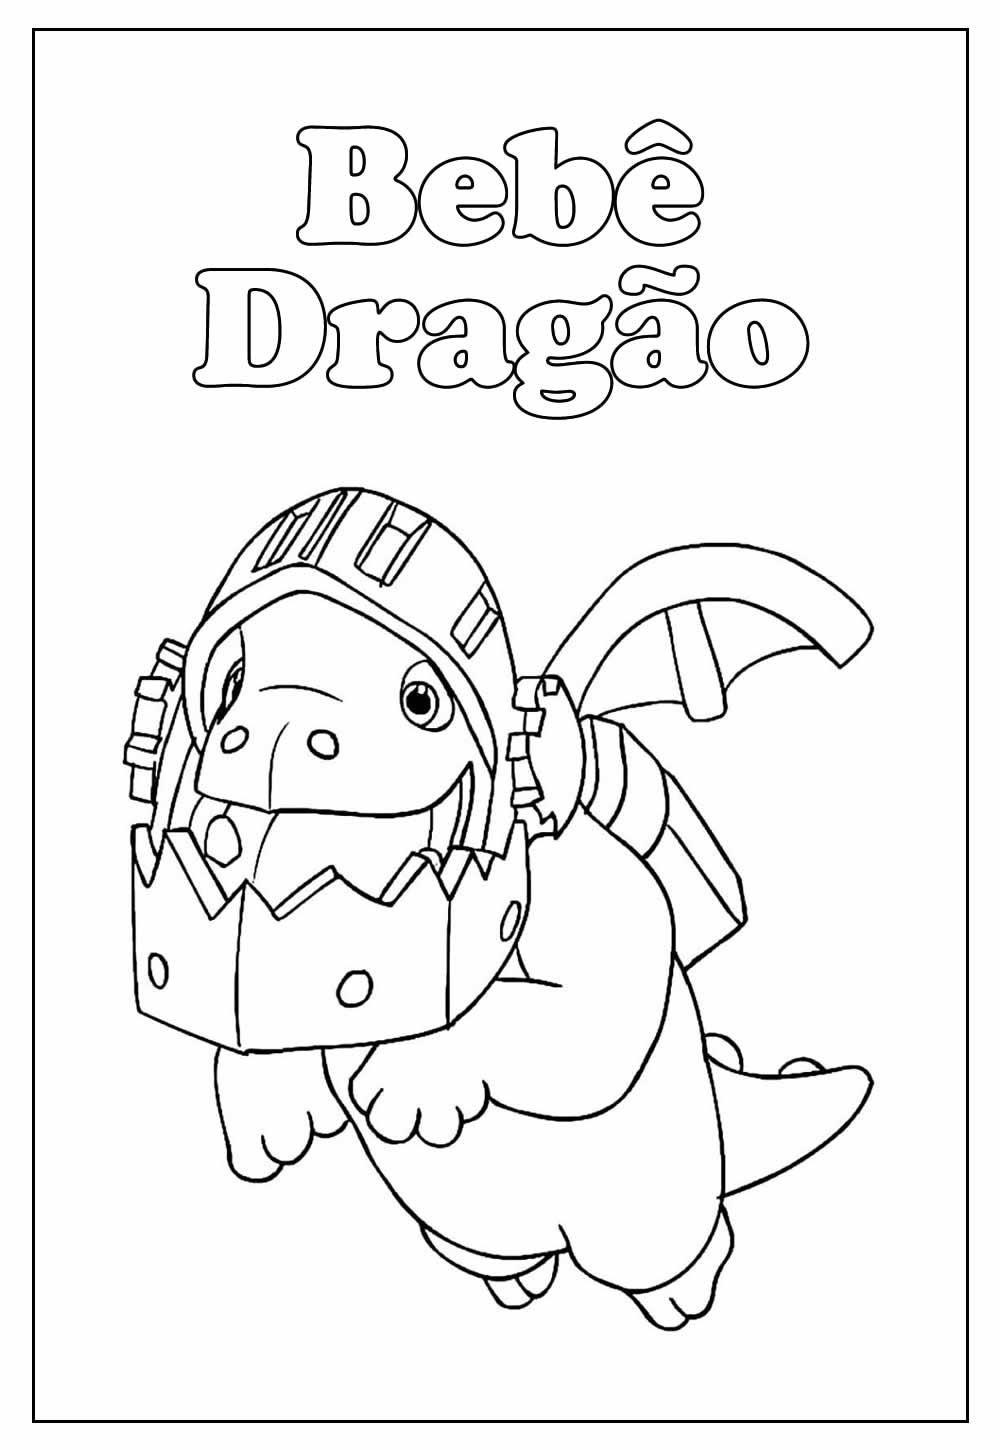 Desenho do Bebê Dragão para colorir - Clash Royale